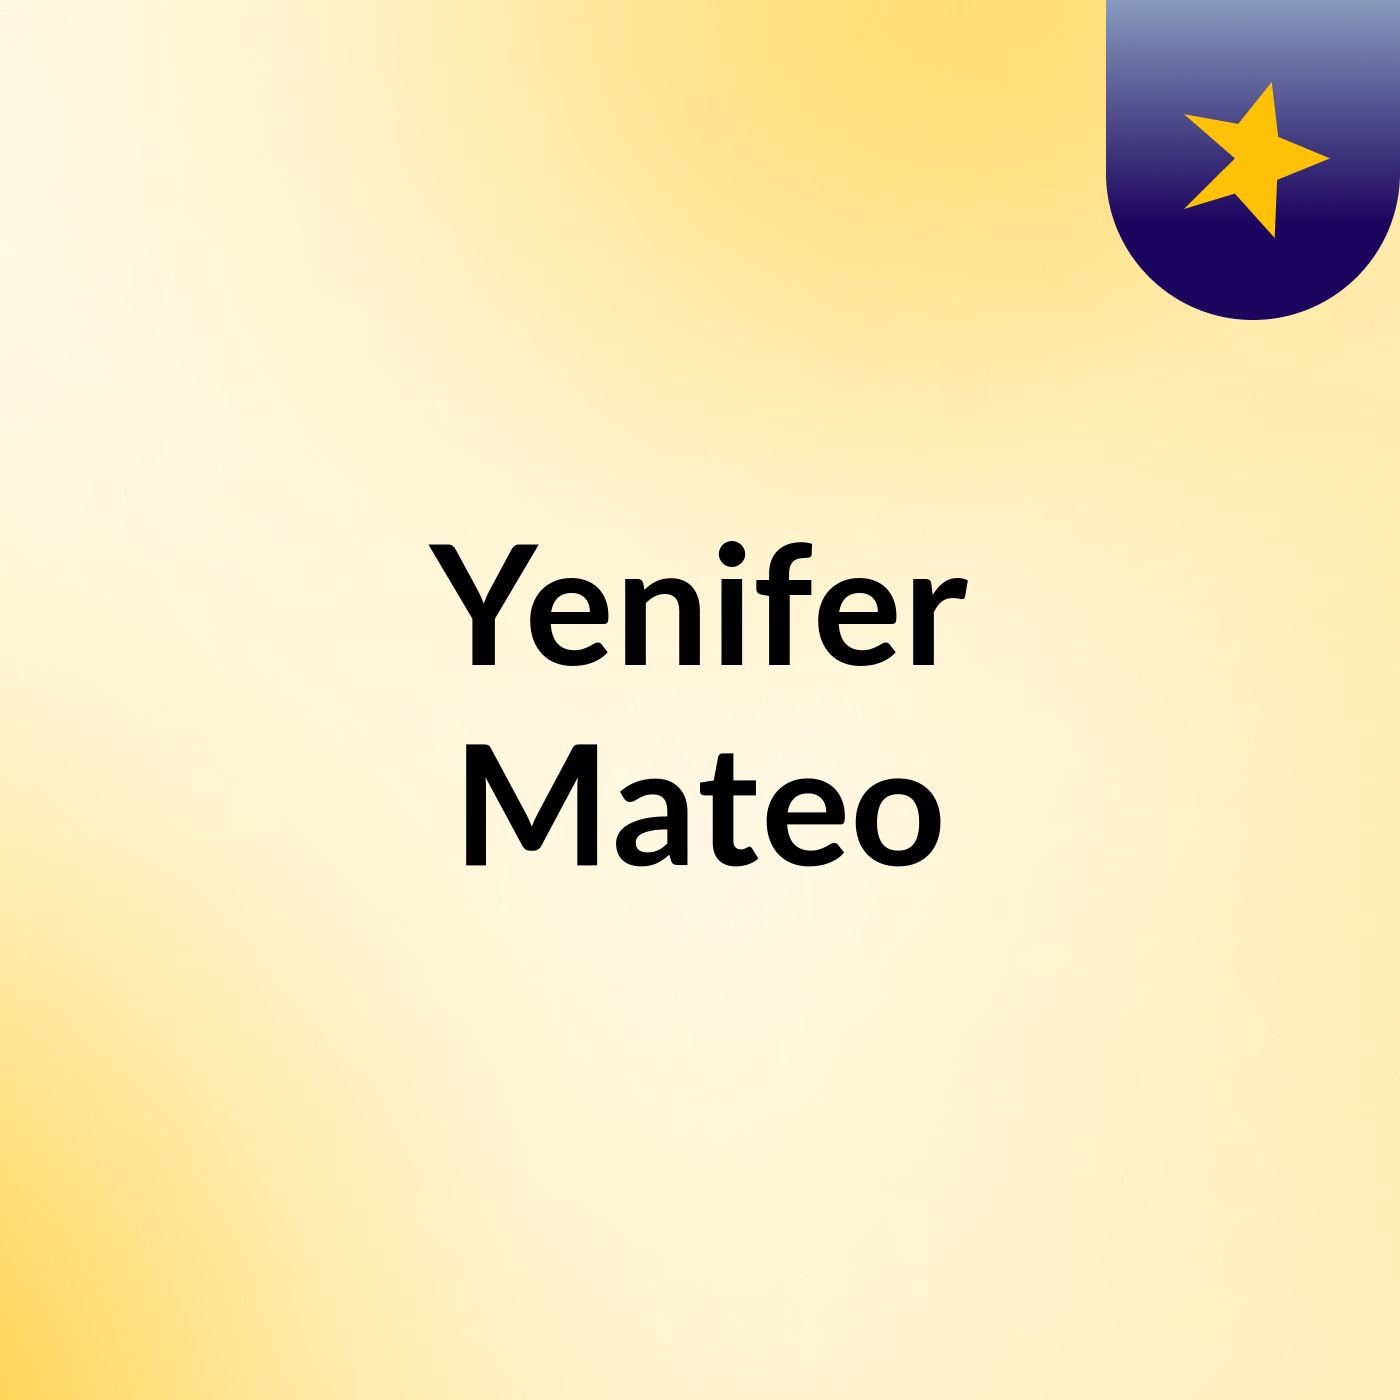 Yenifer Mateo